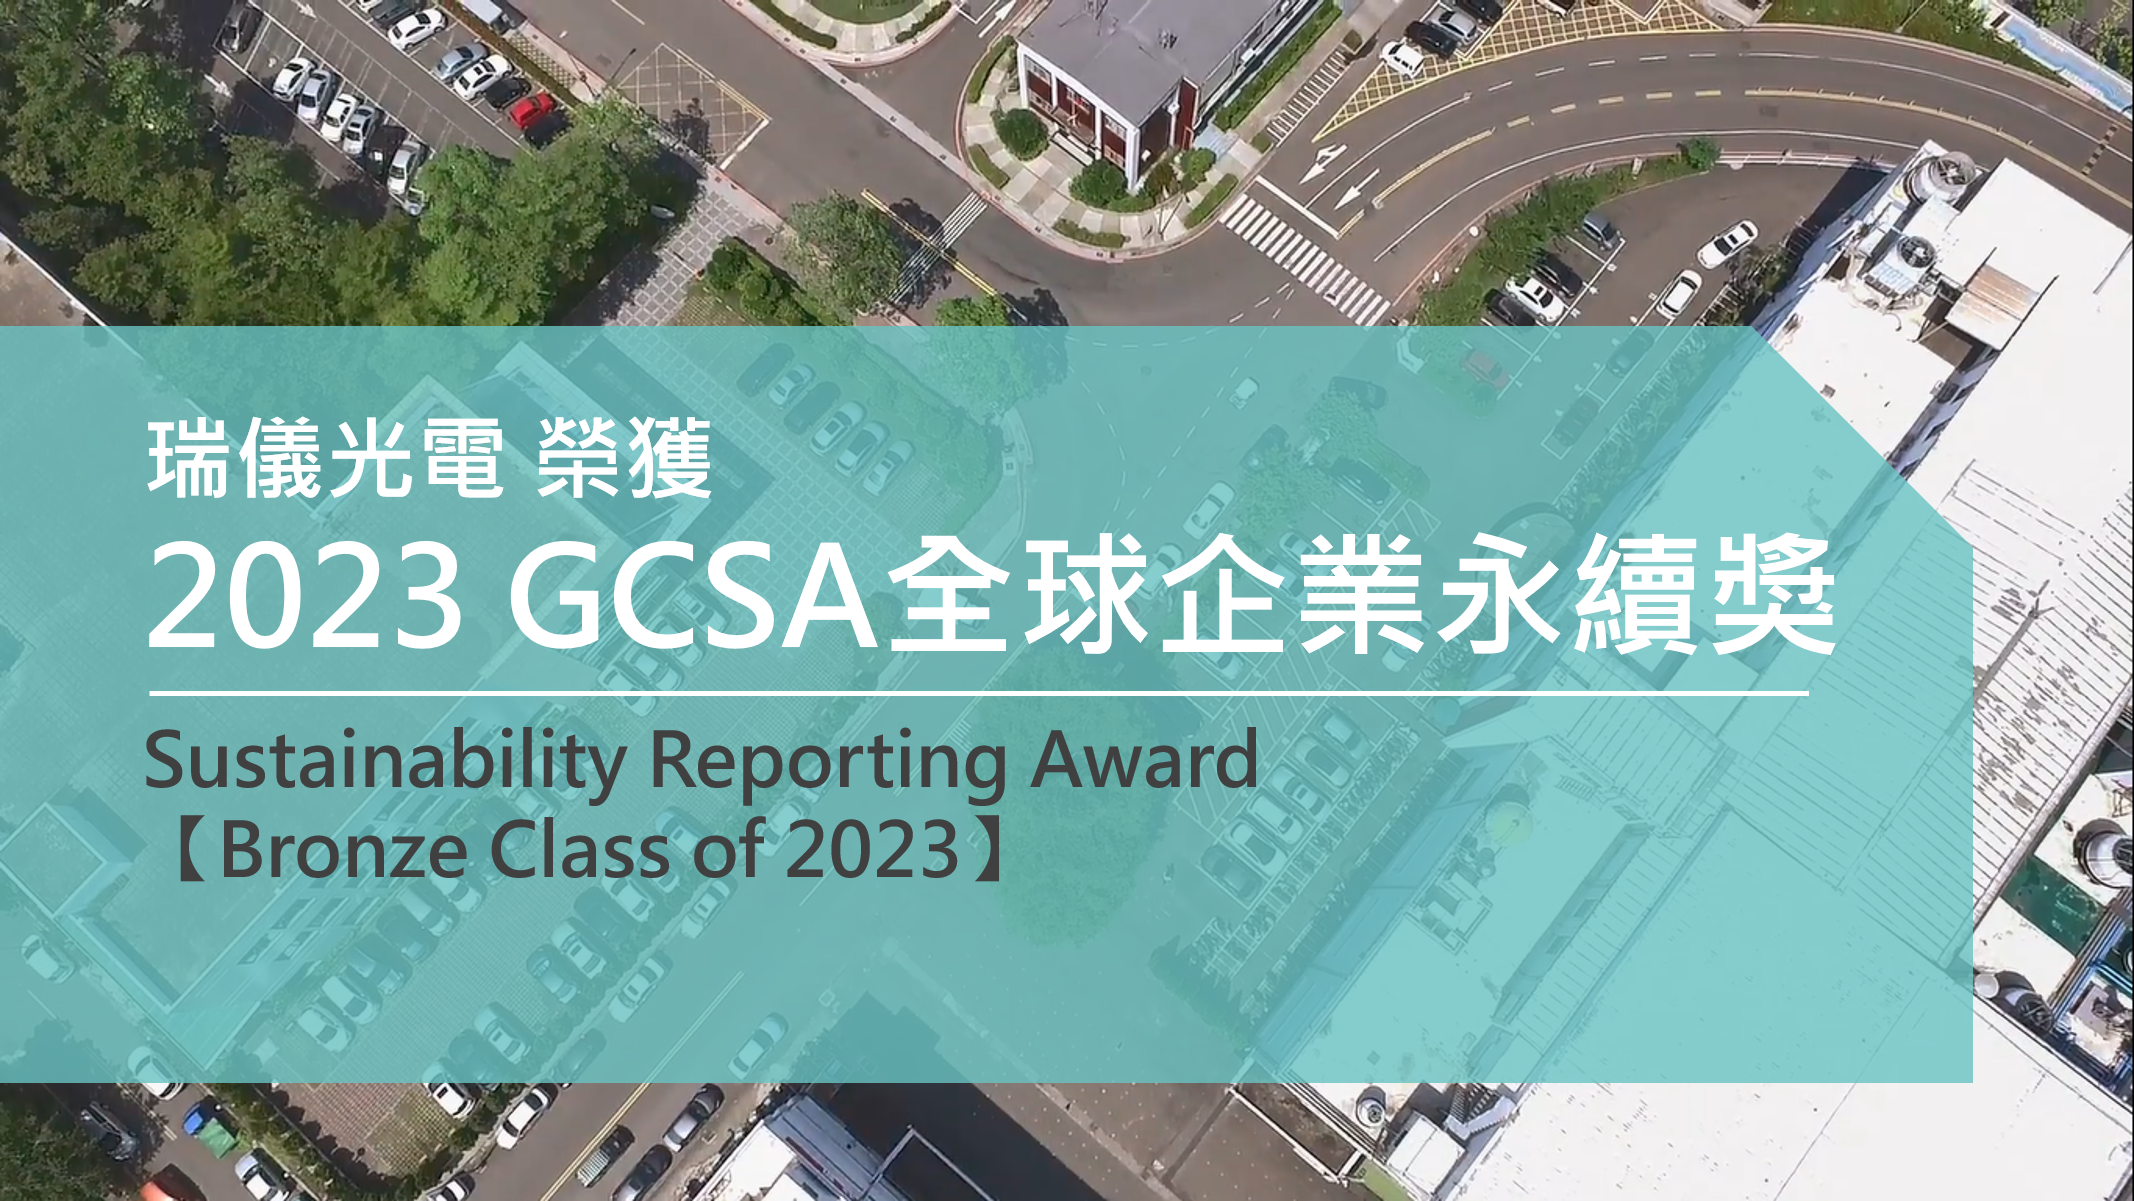 2023年首度榮獲GCSA光榮